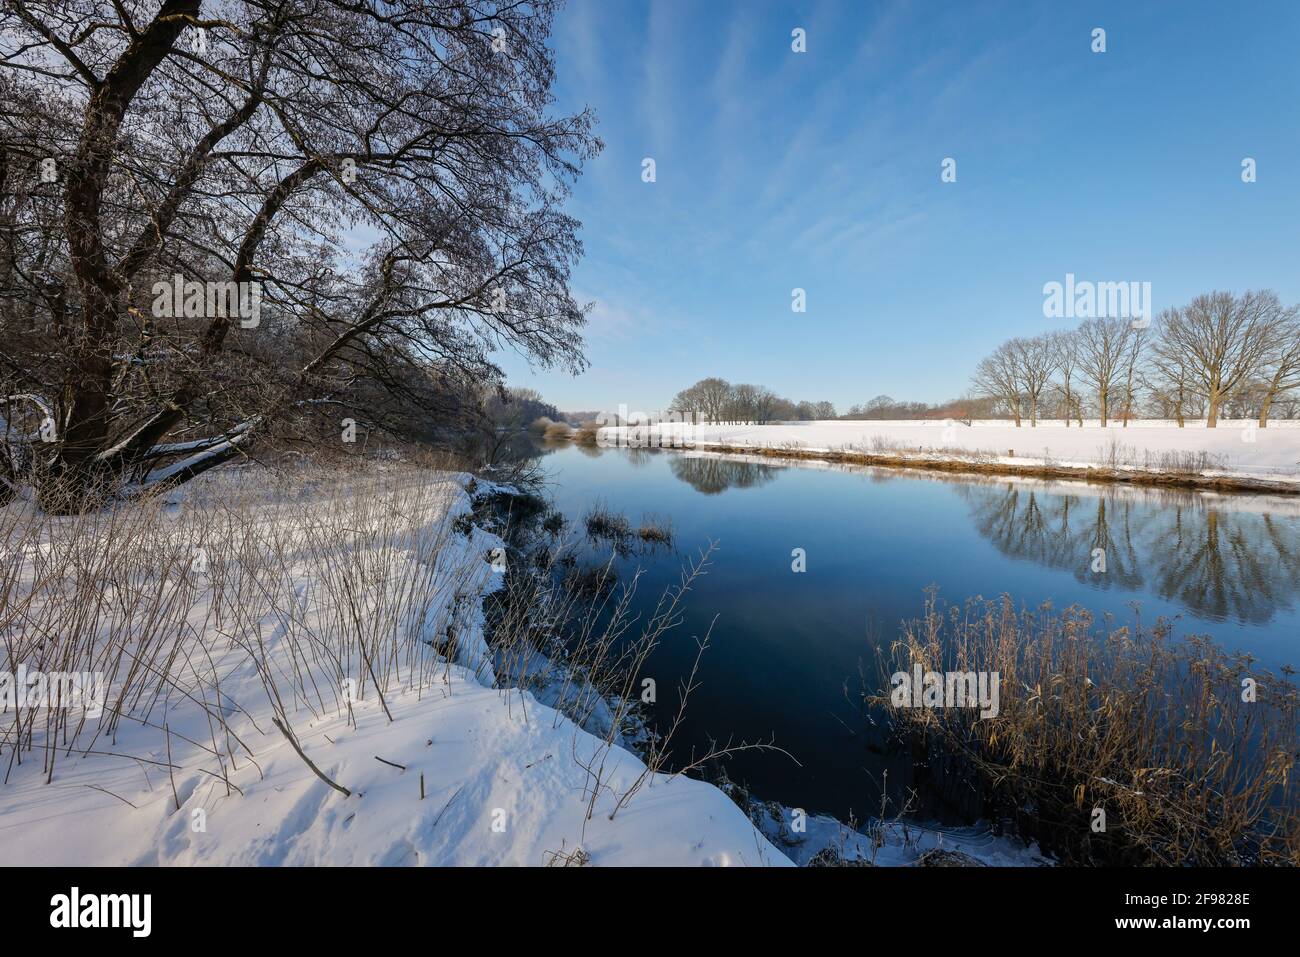 Dorsten, Nordrhein-Westfalen, Deutschland - sonnige Winterlandschaft im Ruhrgebiet, Eis und Schnee auf der Lippe. Stockfoto